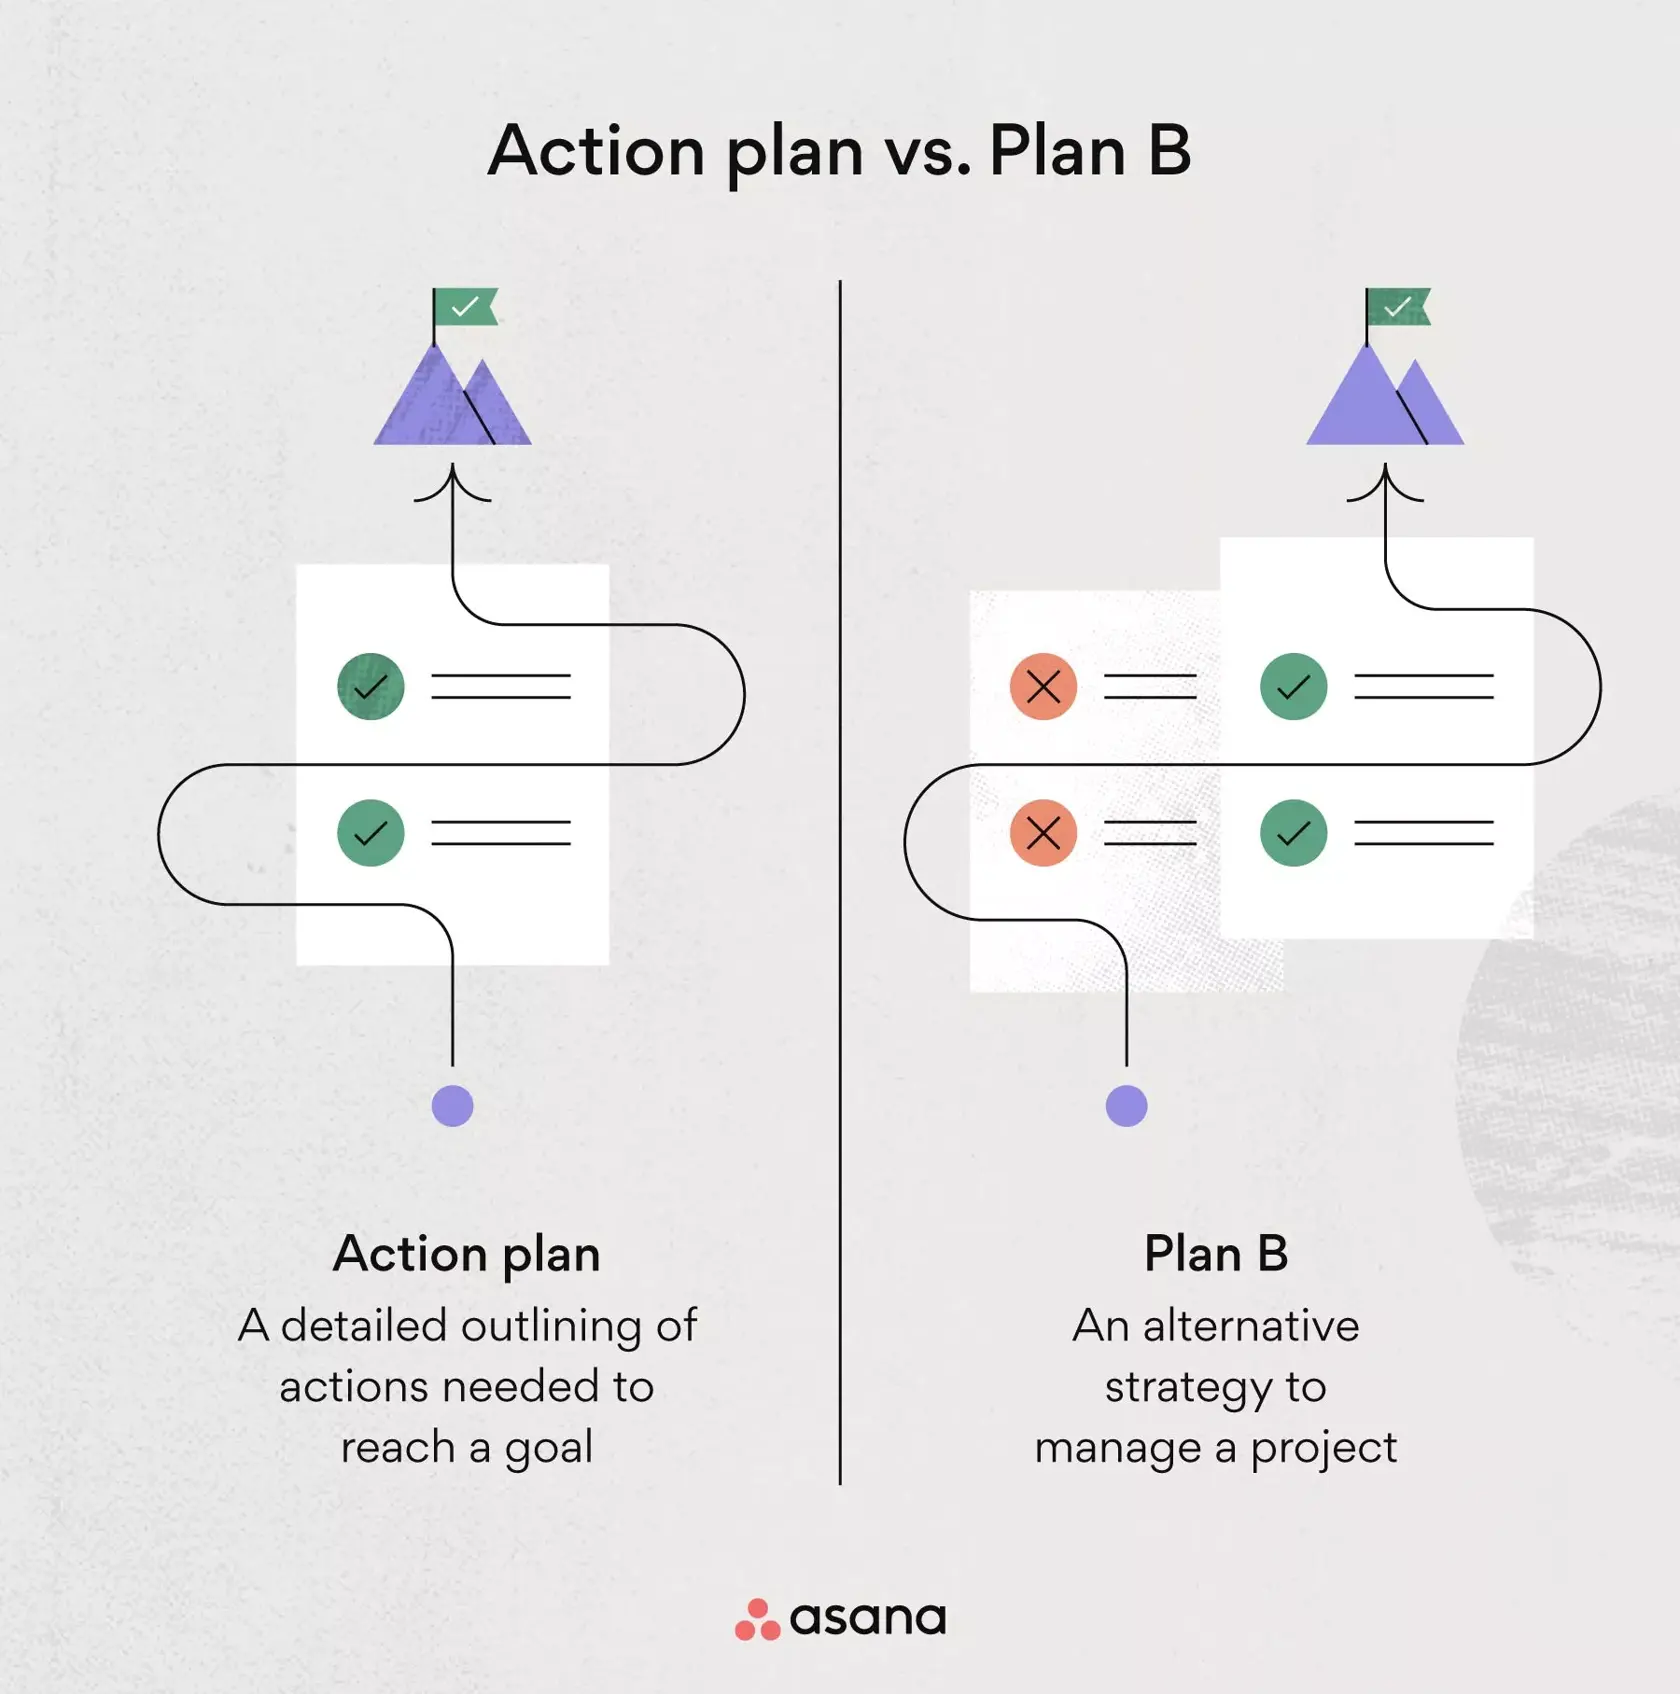 Action plan vs. plan B